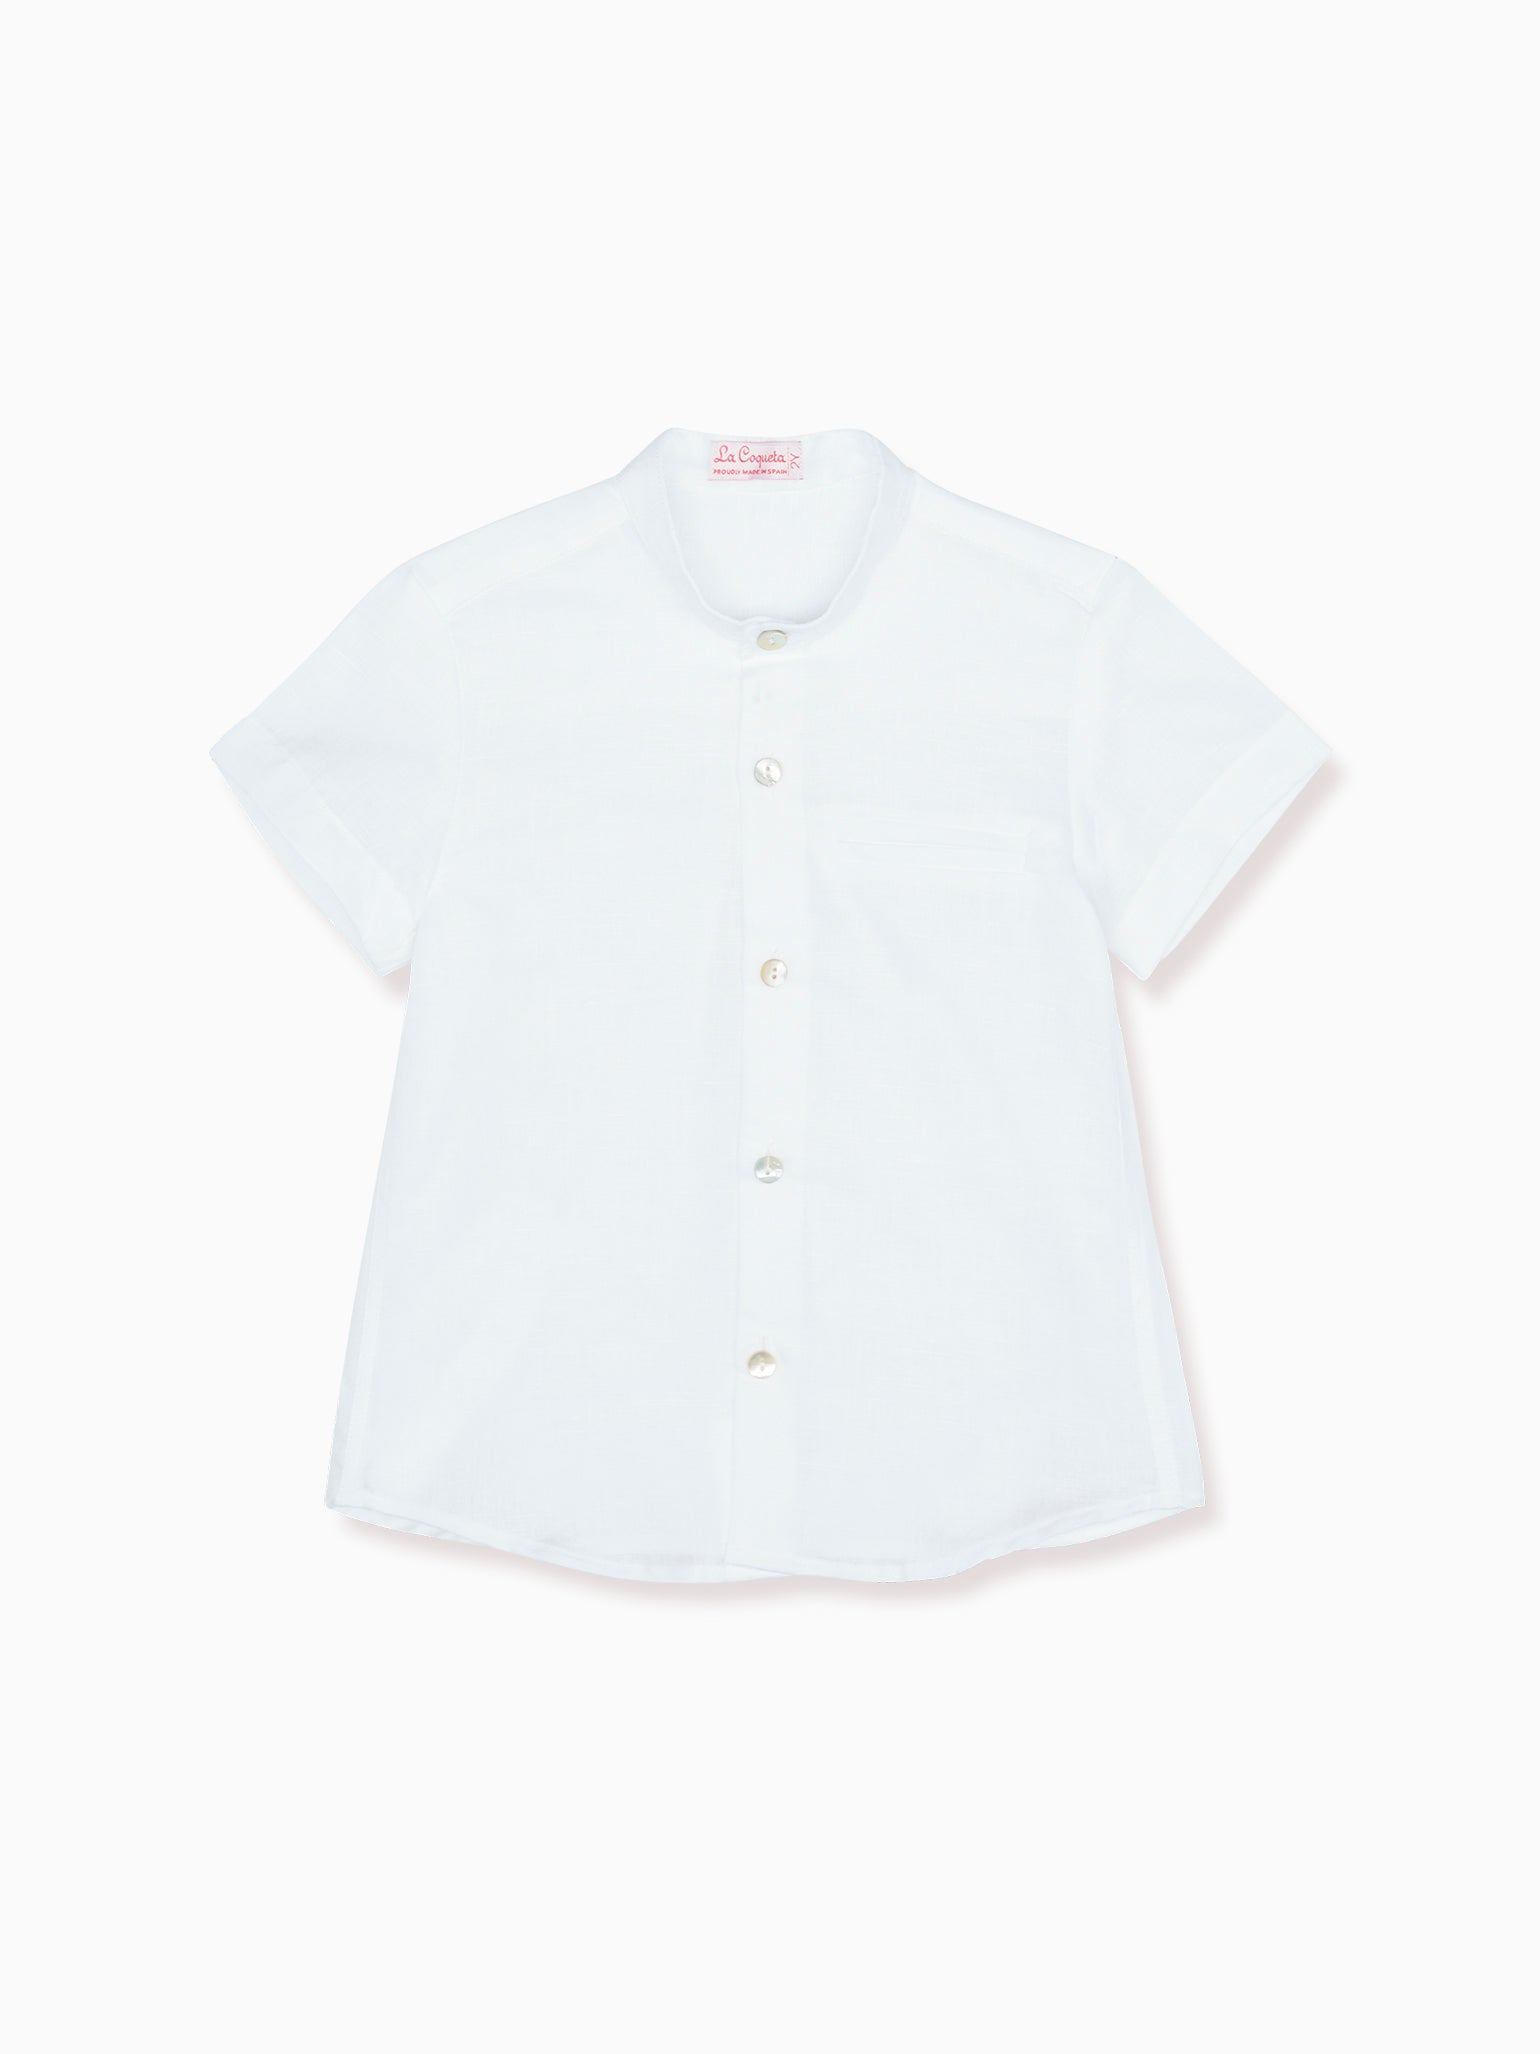 Image of White Arcos Boy Shirt